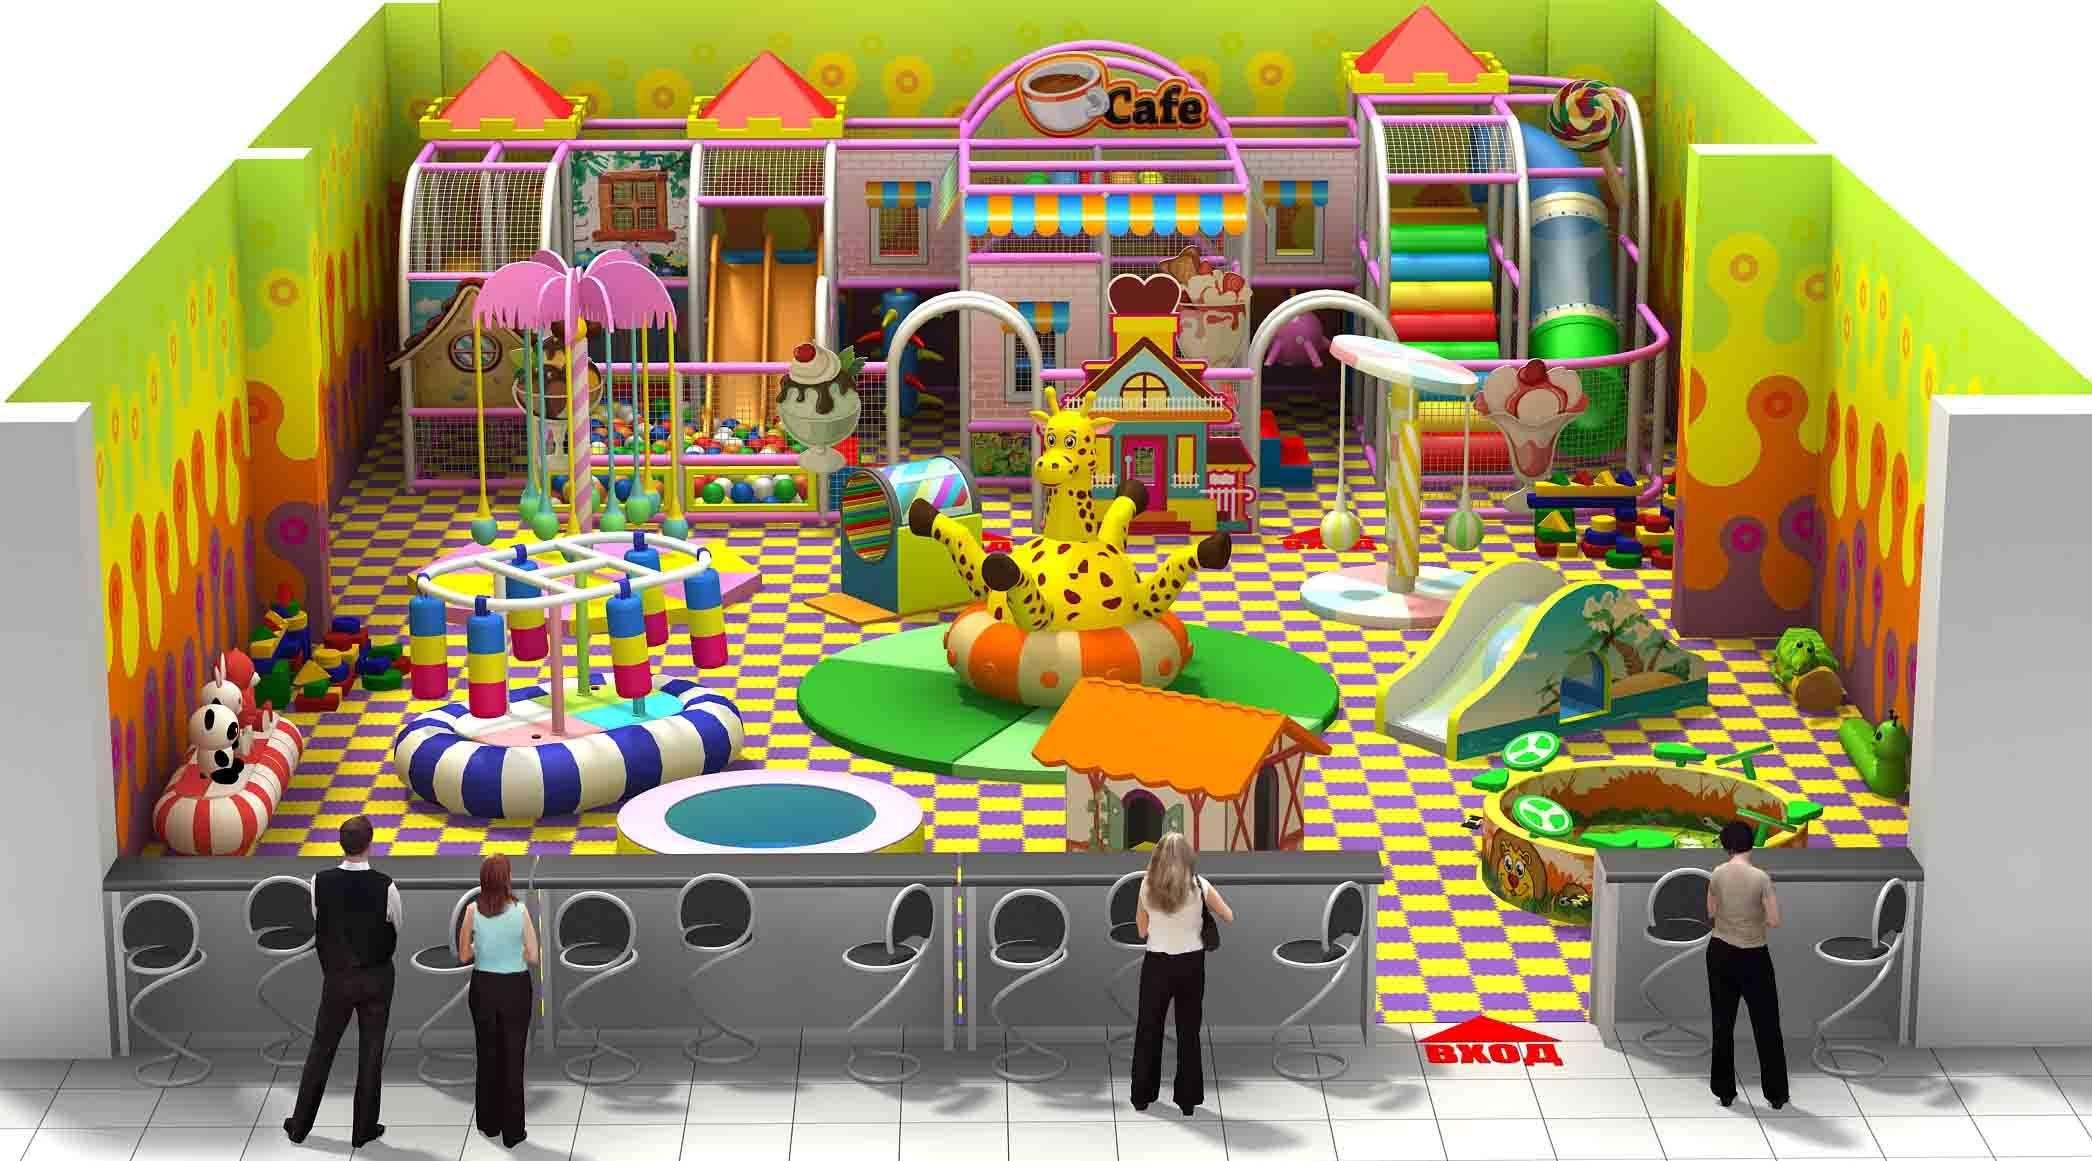 План развлечений. Развлекательный центр "детская игровой центр сказка" Динская. Детская игровая комната. Детские игровые лабиринты. Игровая комната для детей.